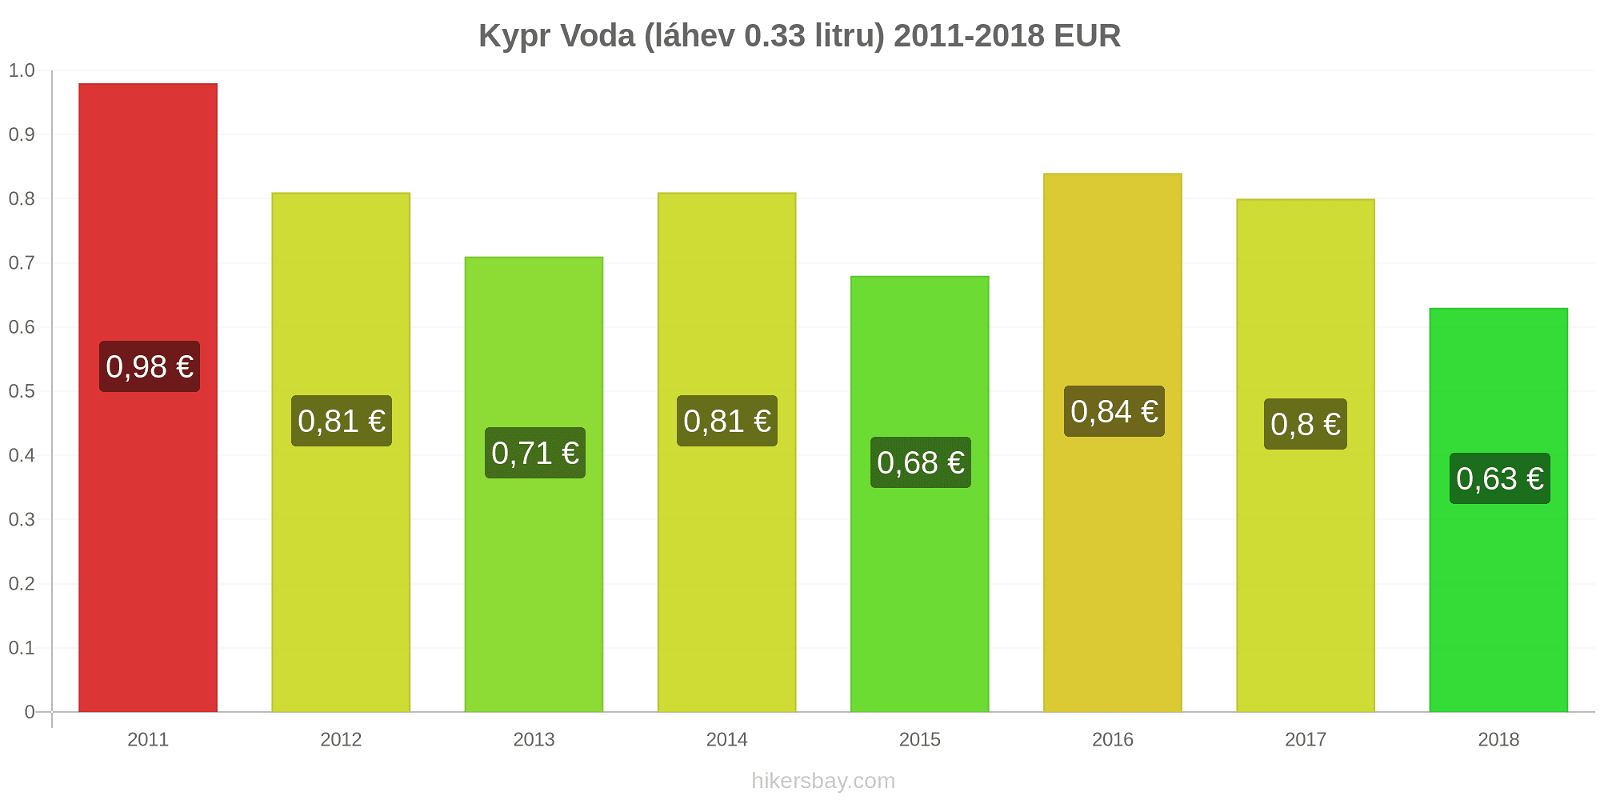 Kypr změny cen Voda (láhev 0.33 litru) hikersbay.com